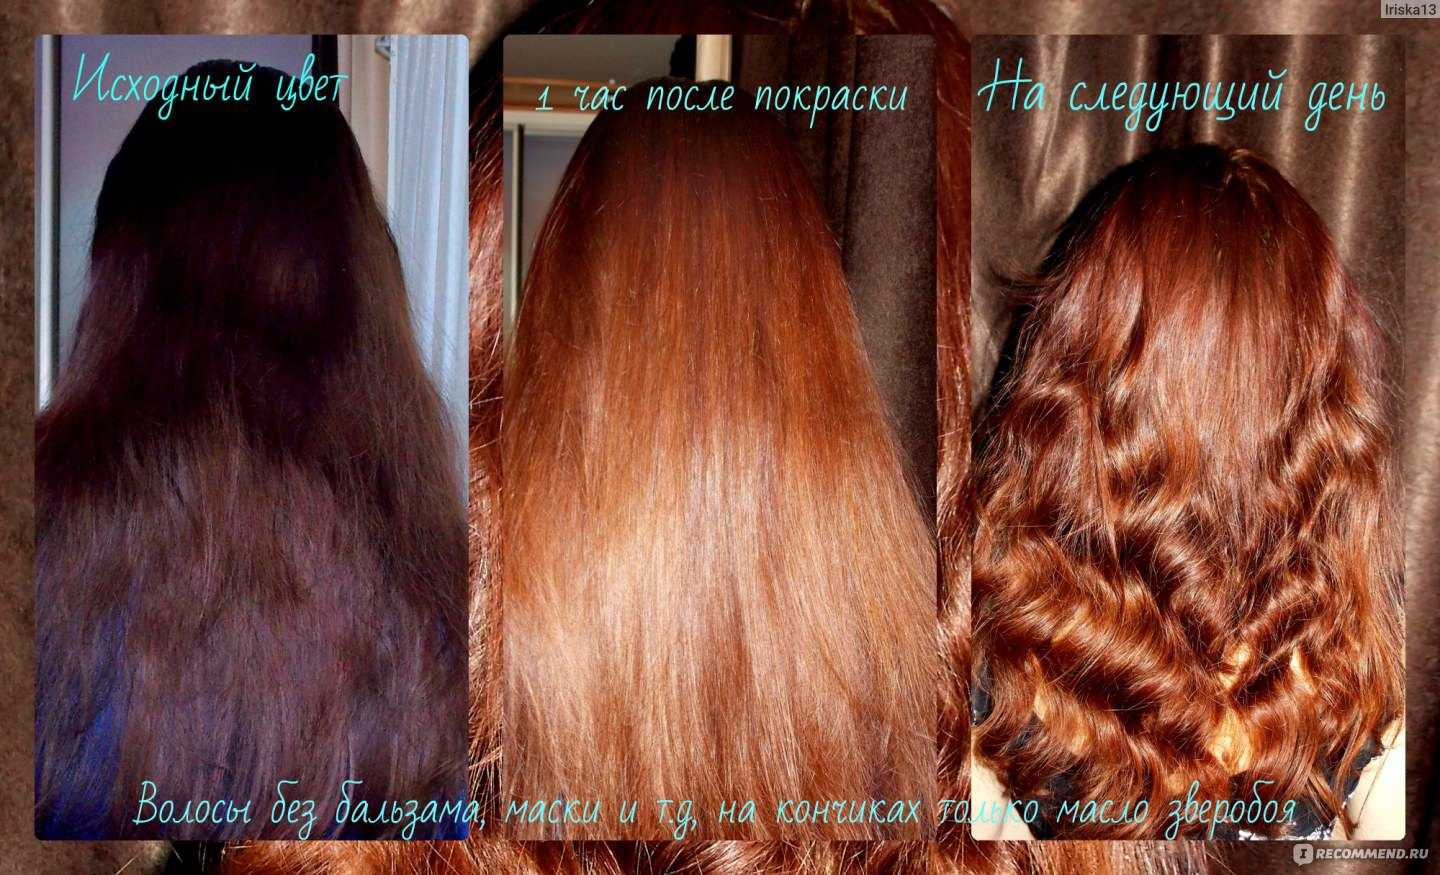 Хна — натуральный краситель для волос. отзывы, польза и вред